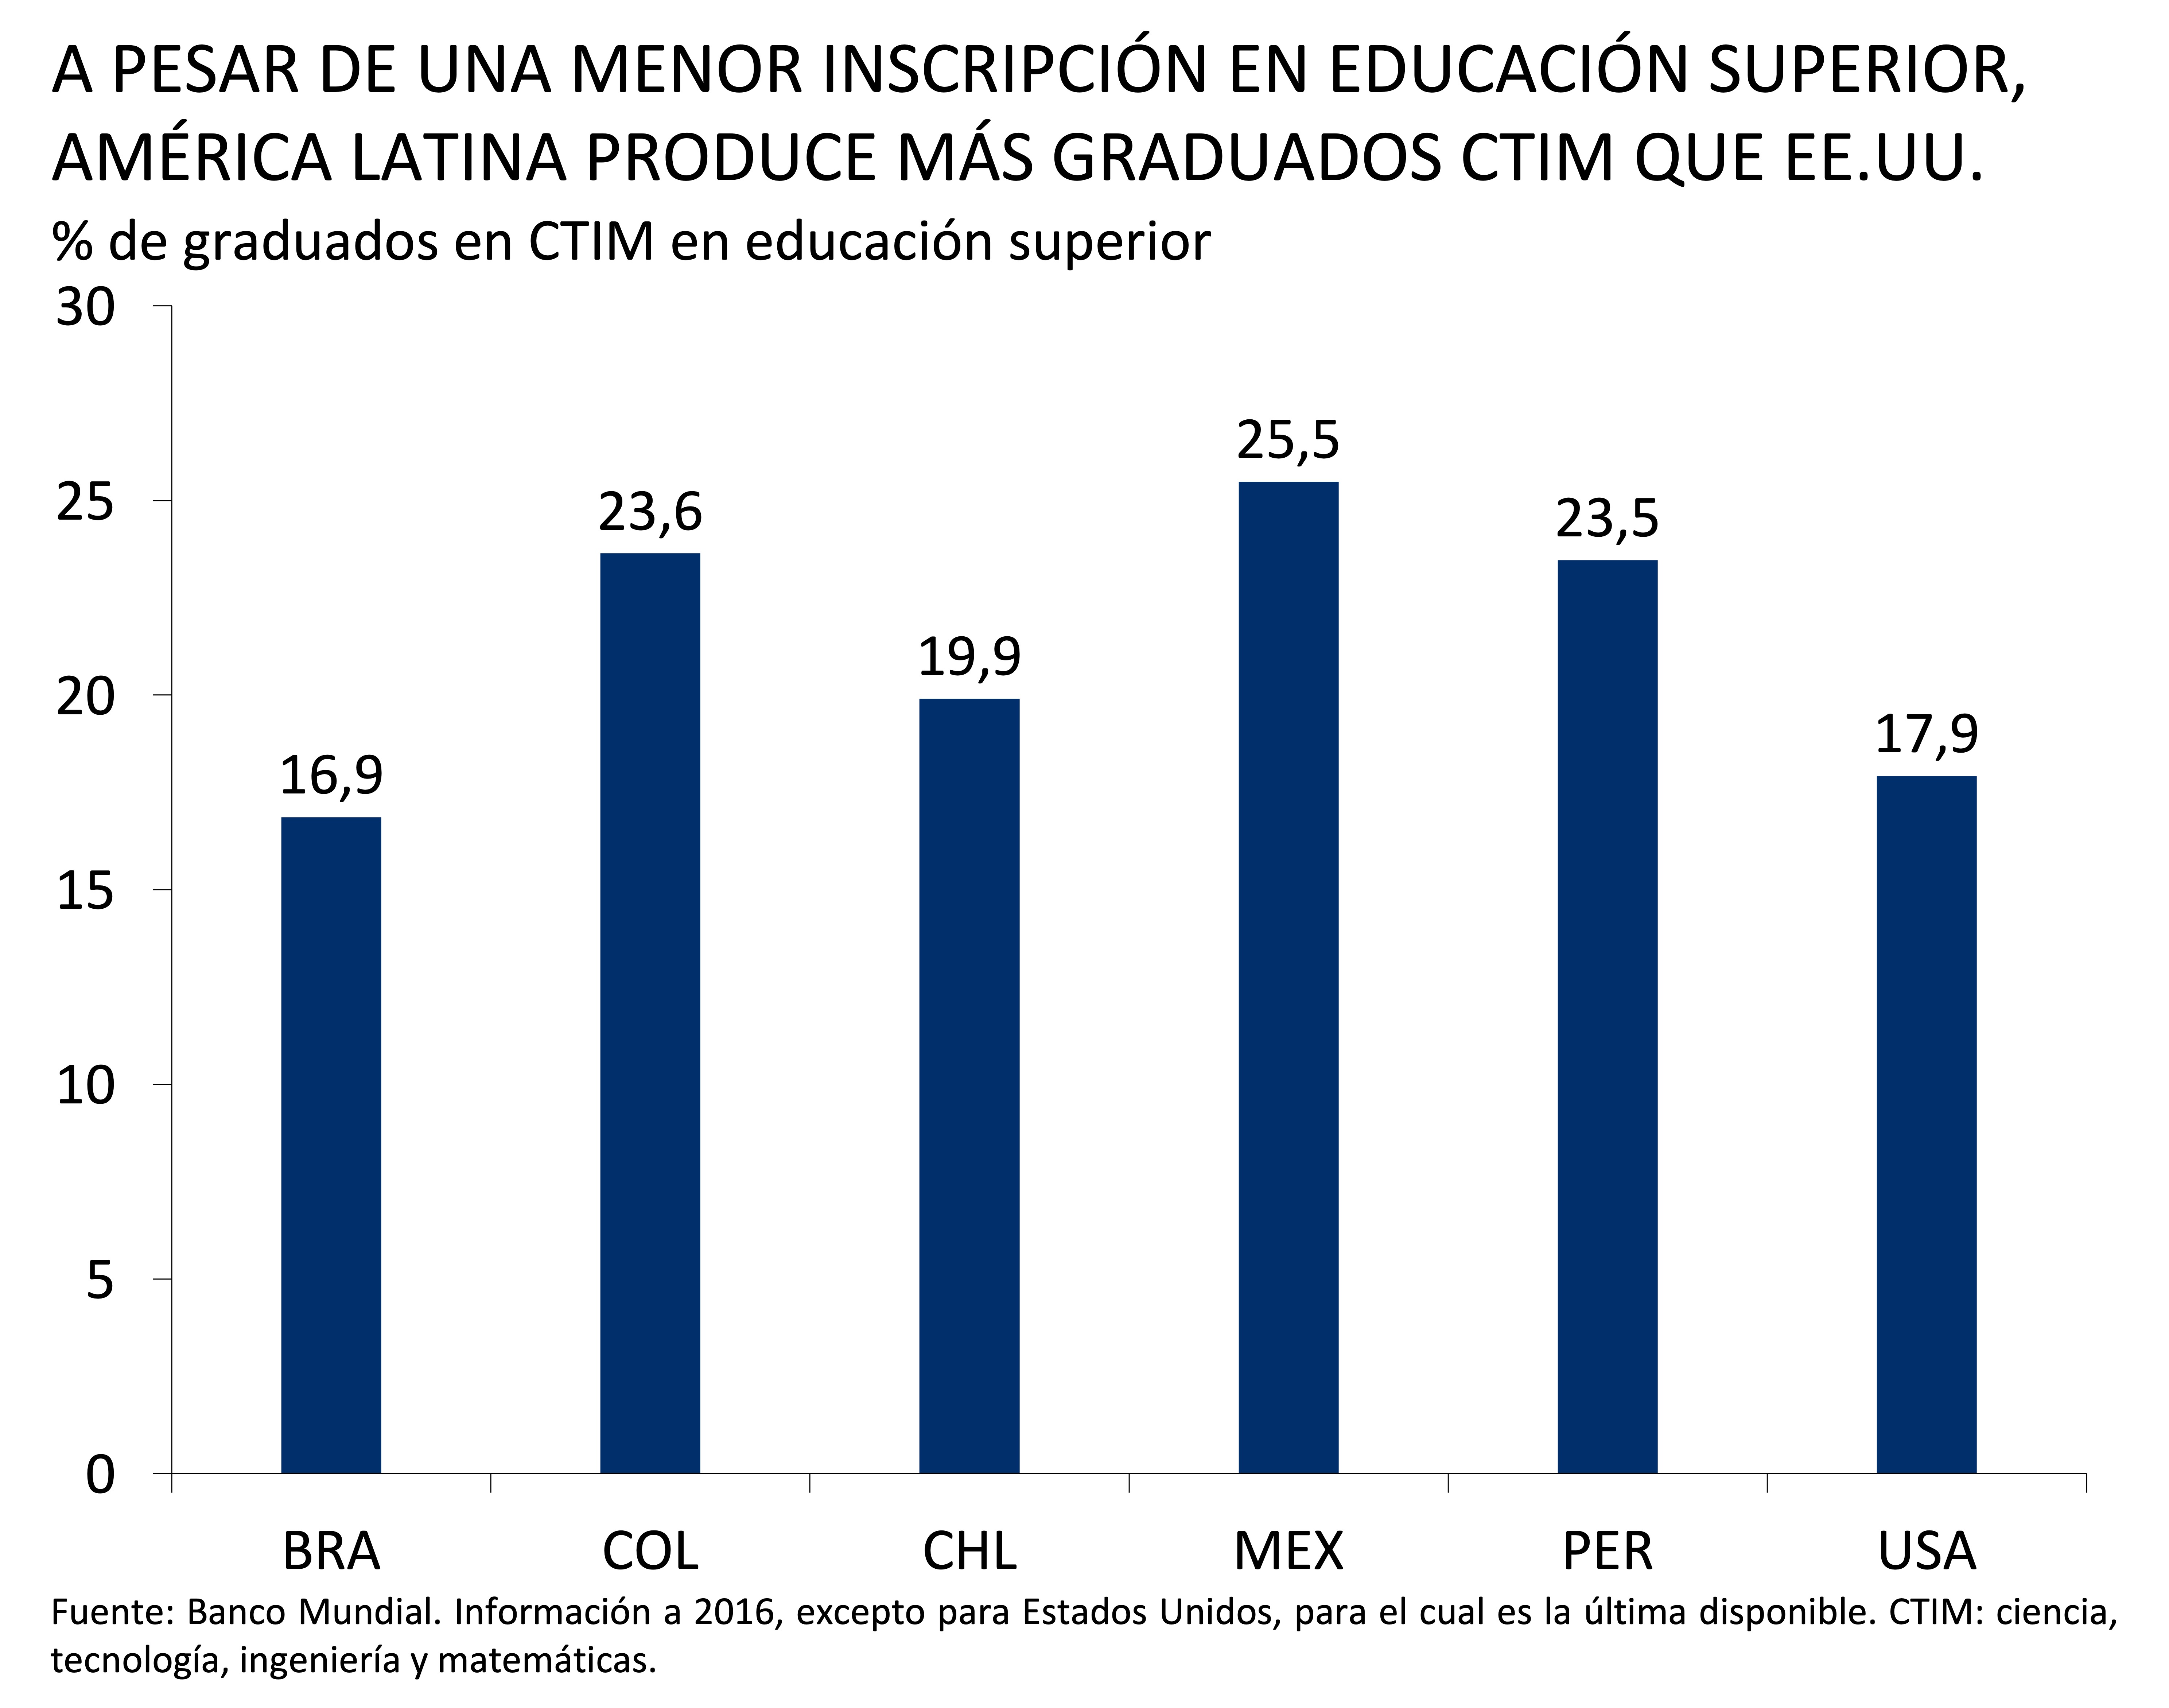 Este gráfico muestra el porcentaje de graduados en ciencia, tecnología, ingeniería y matemáticas (CTIM) en educación superior. 